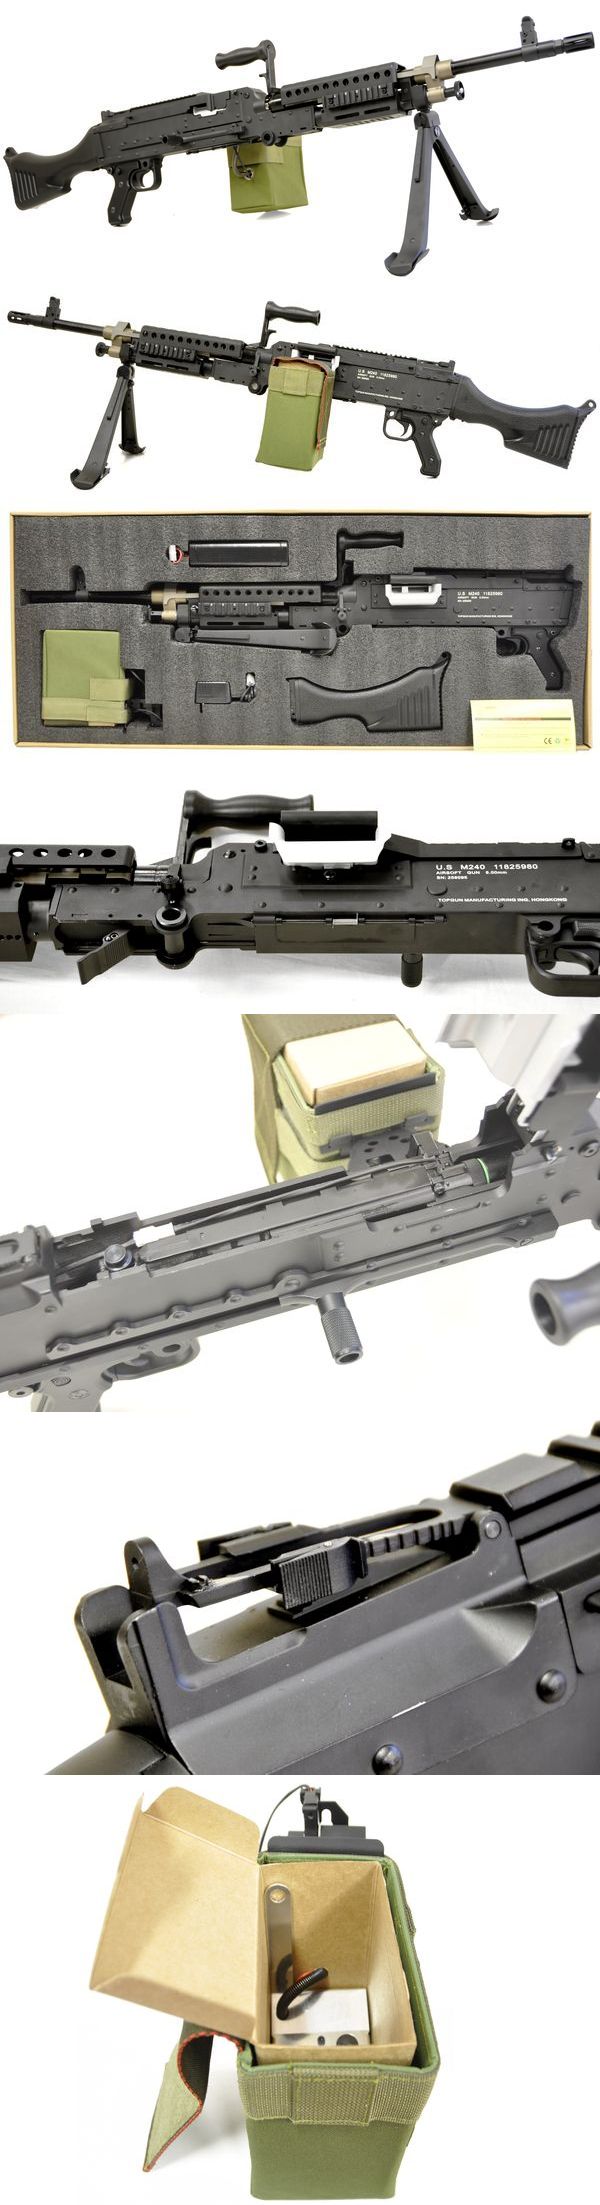 HBX M240B AEG